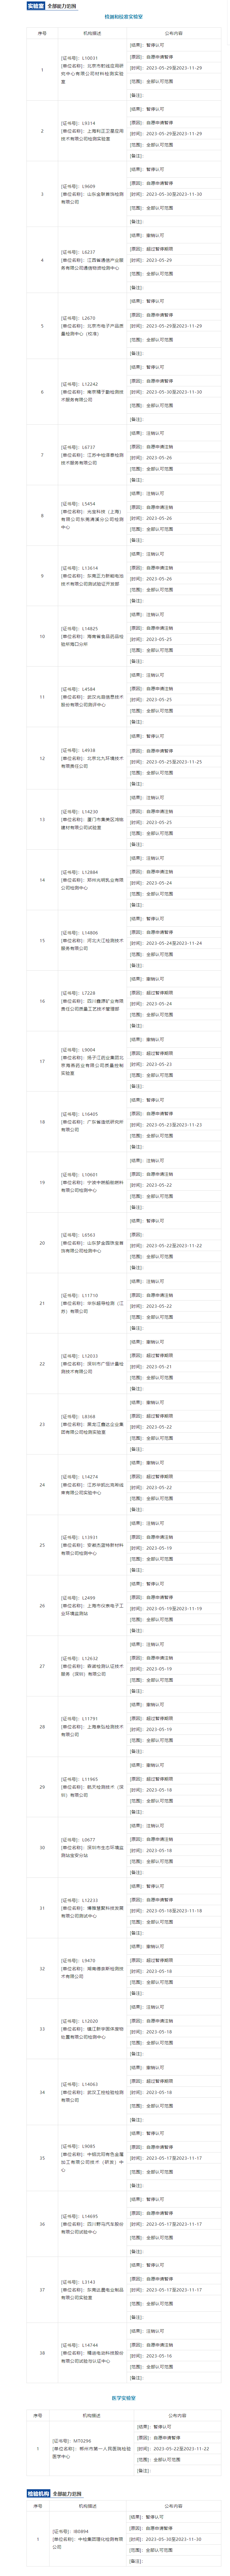 FireShot Capture 080 - CNAS@你｜5月下半月暂停撤销注销公告 - mp.weixin.qq.com.png